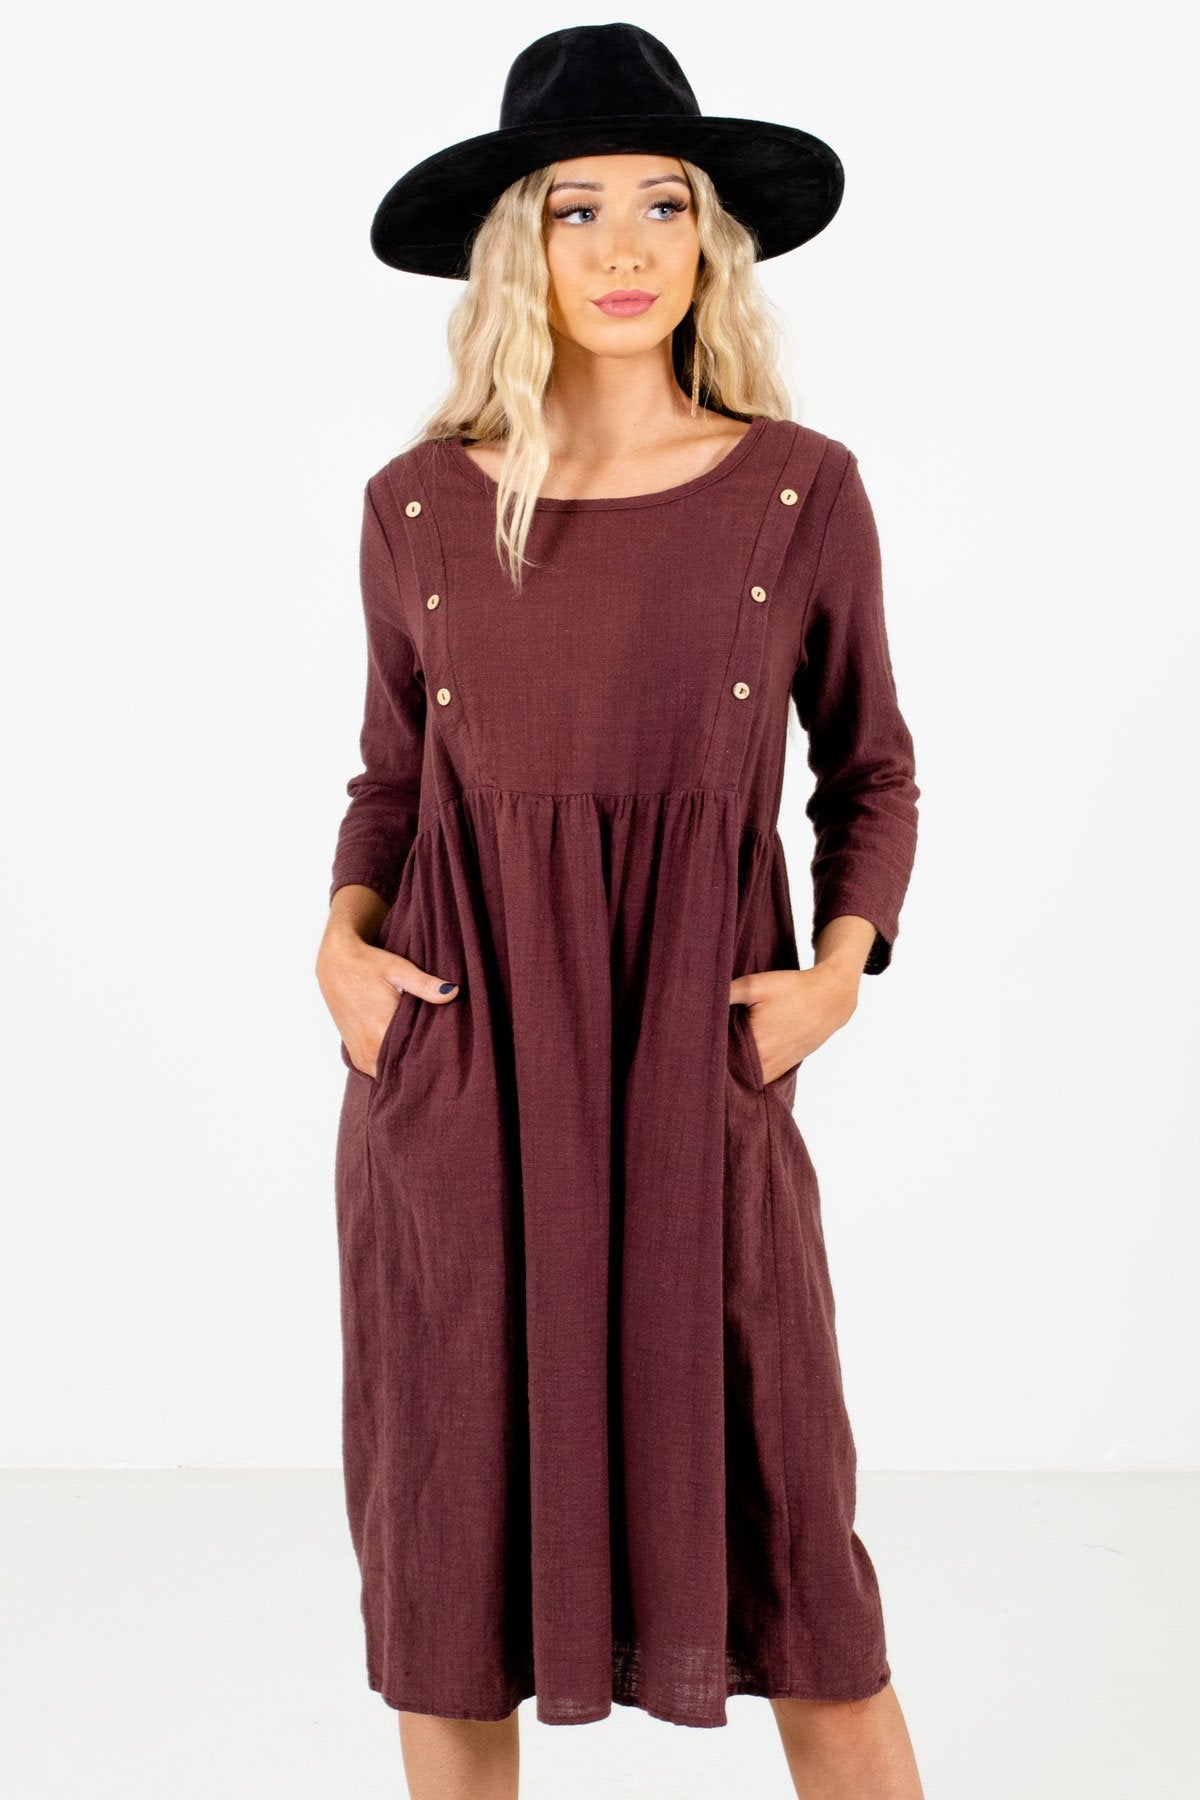 Purple Knee-Length Boutique Dresses for Women